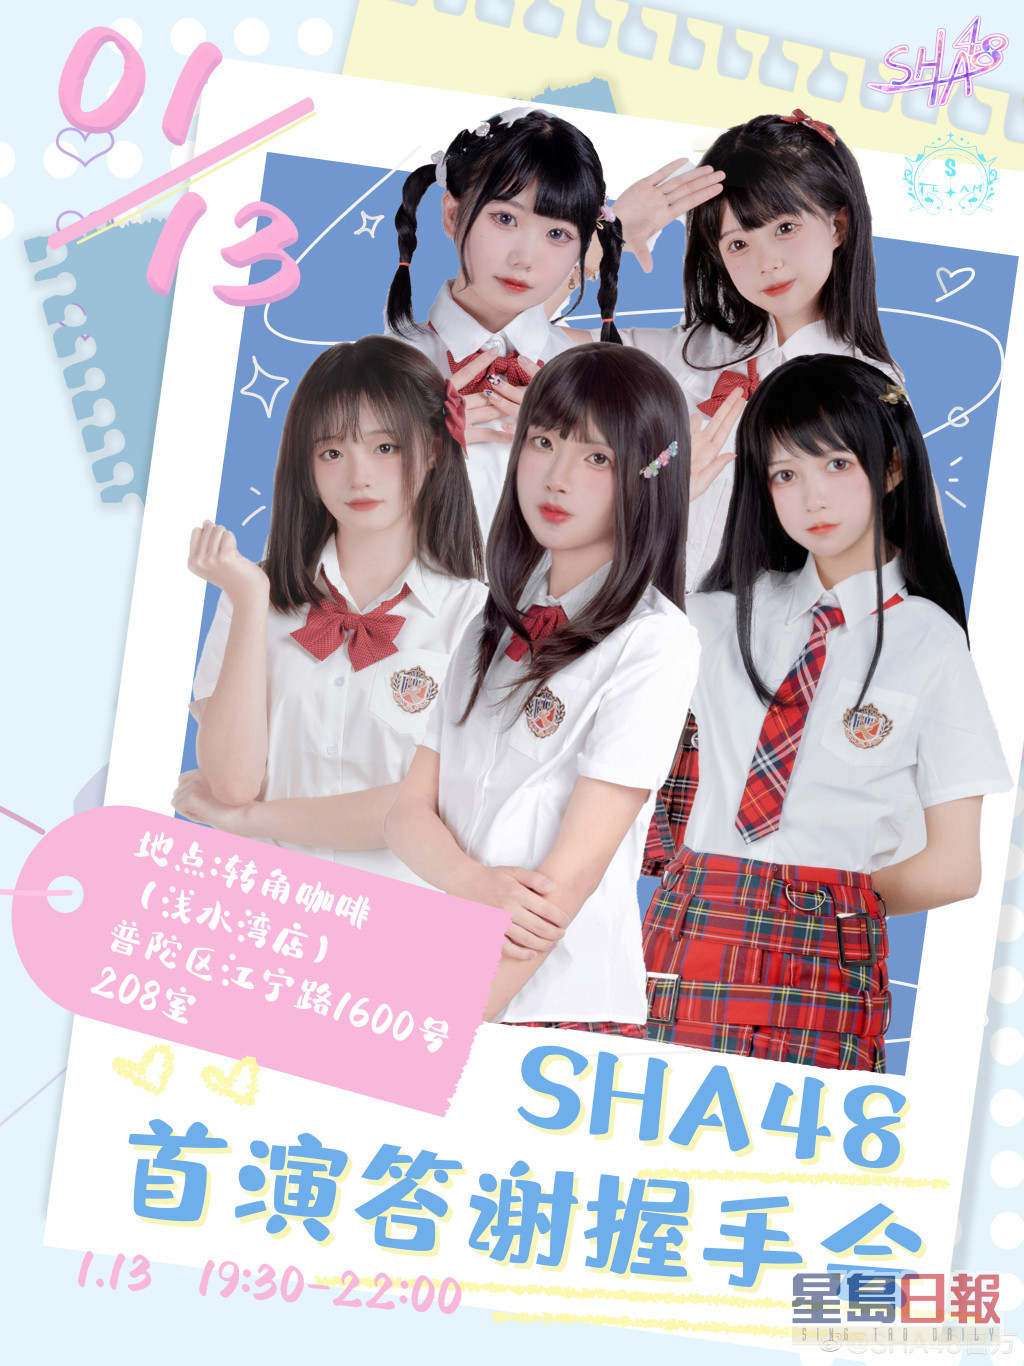 內地「女團」SHA48在上月底出道，海報中五名「美少女」都P到勁唔自然。